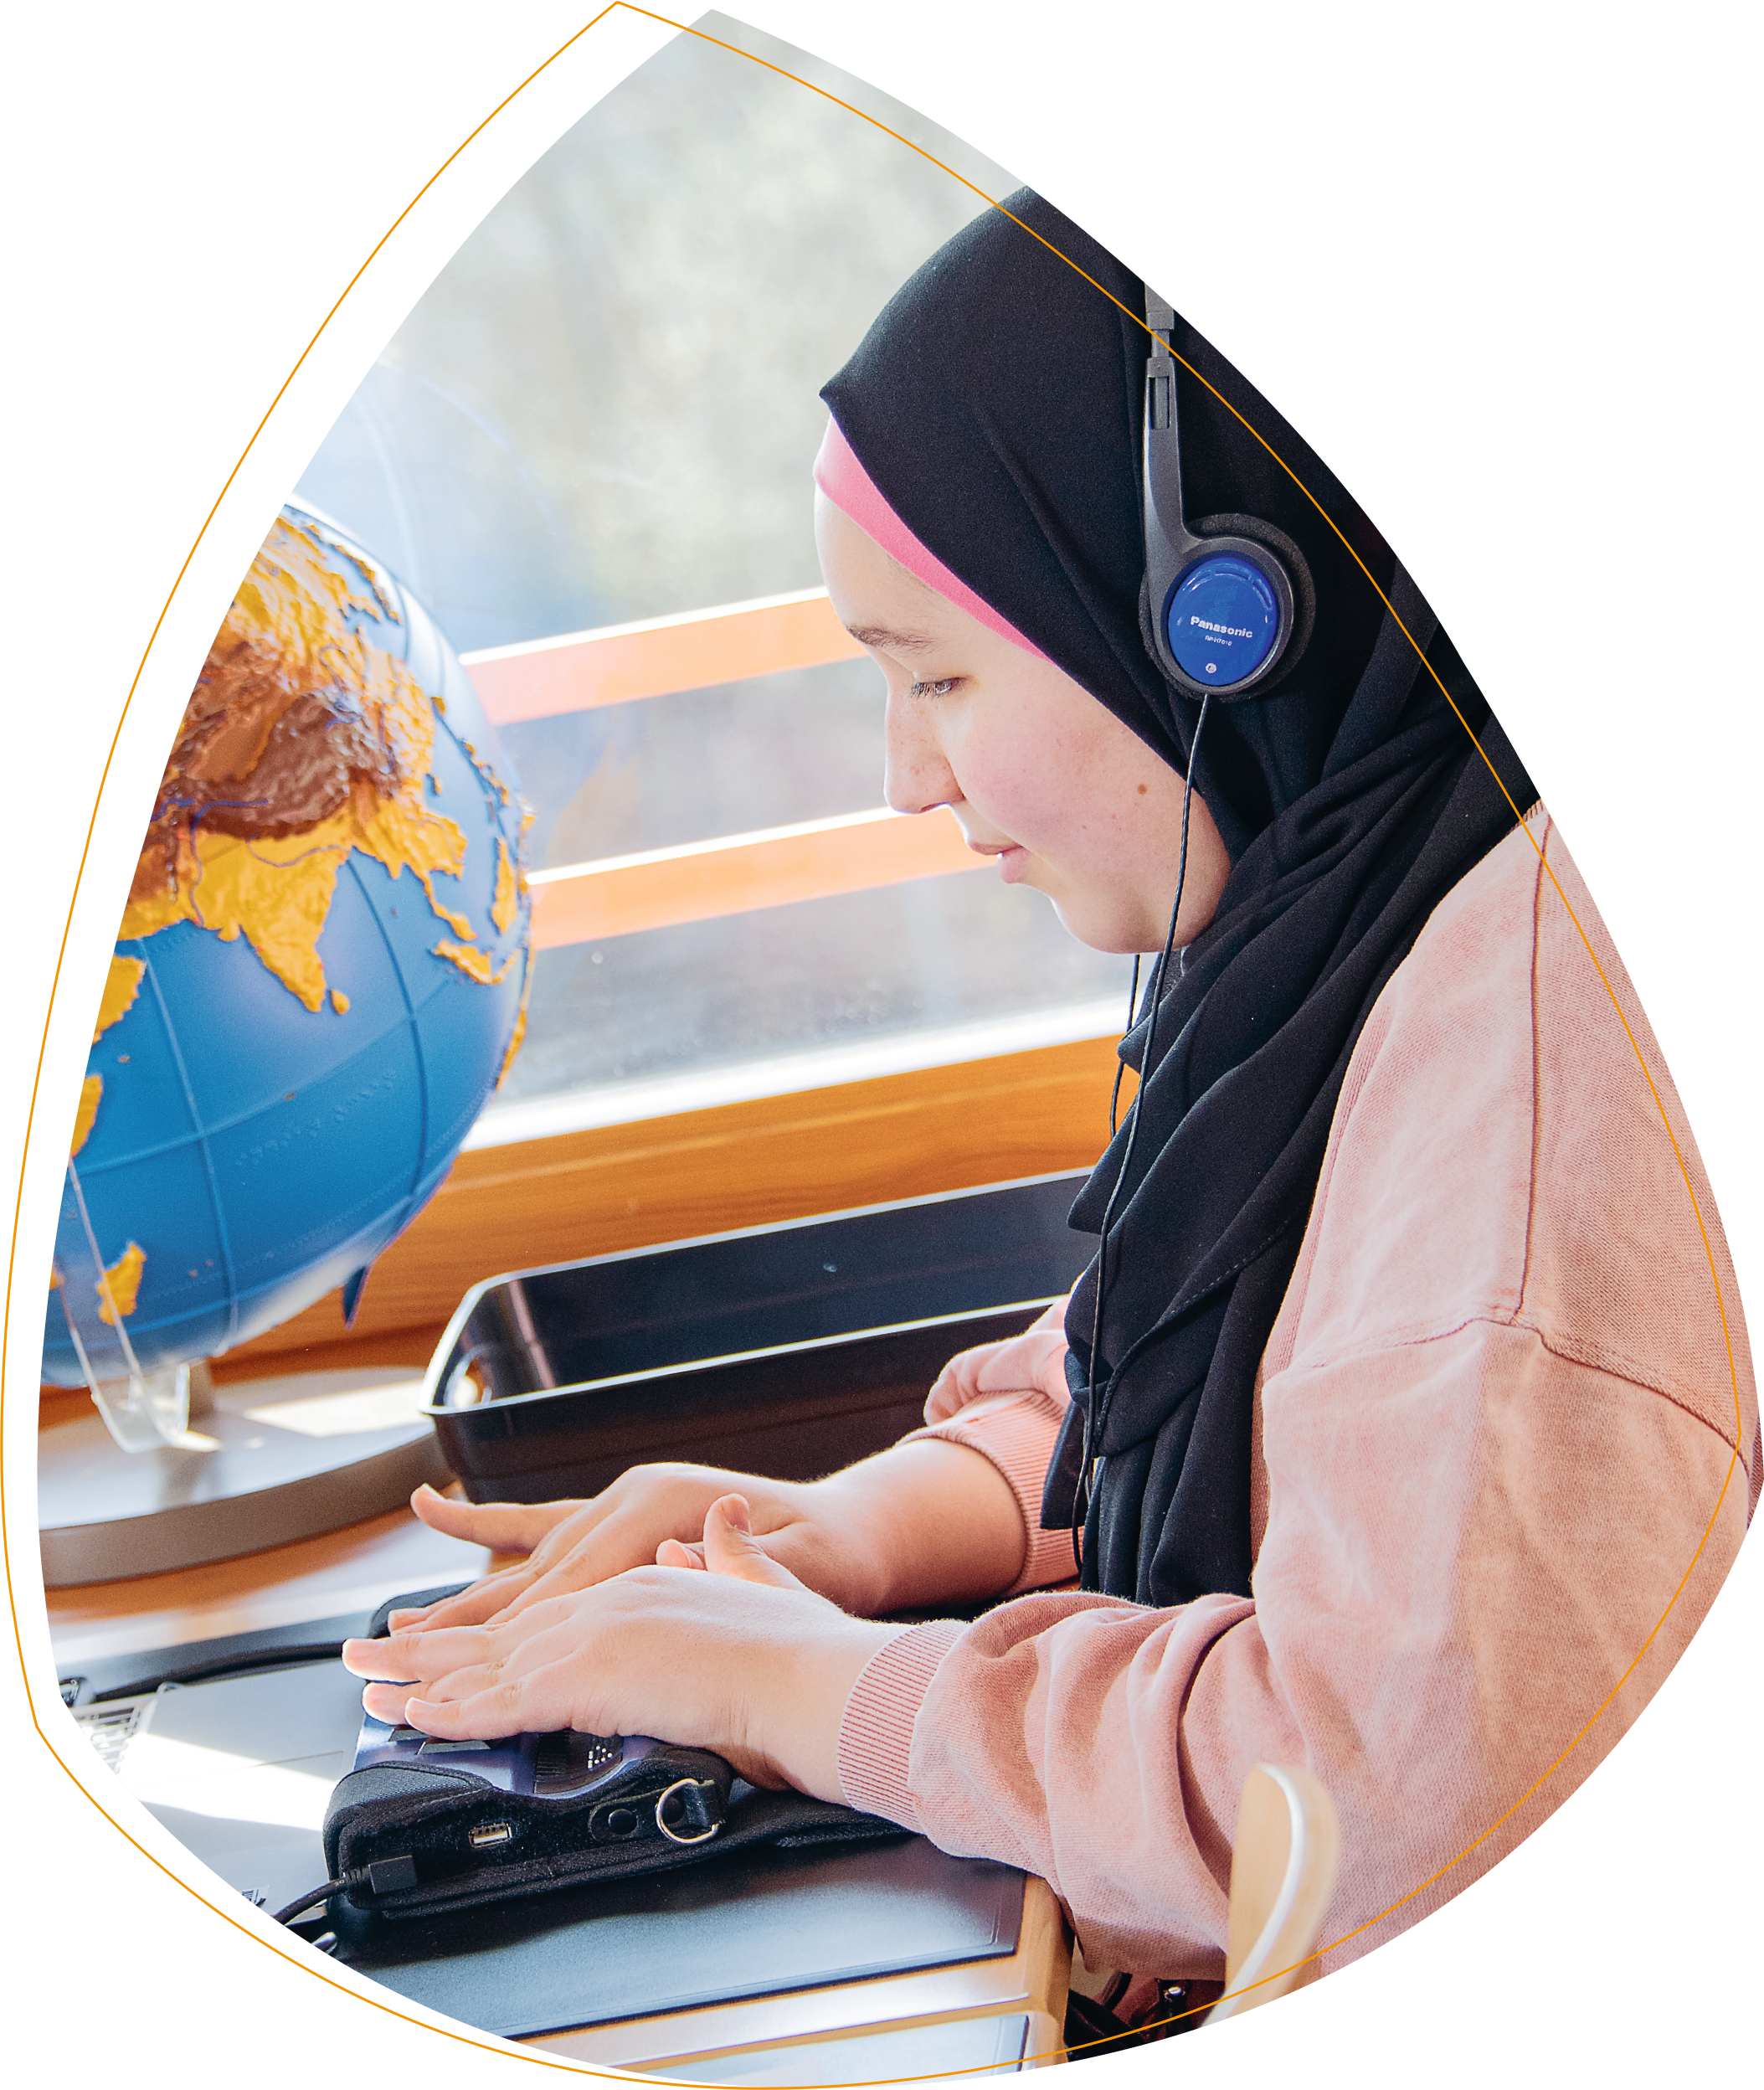 Ein Mädchen mit rosa Pulli und einem schwarzen Kopftuch, das Kopfhörer trägt. Vor ihr liegt eine Braille-Zeile, mit der Sie arbeitet.  Im Hintergrund steht ein Globus, dessen Inhalte physisch hervorgehoben sind. 